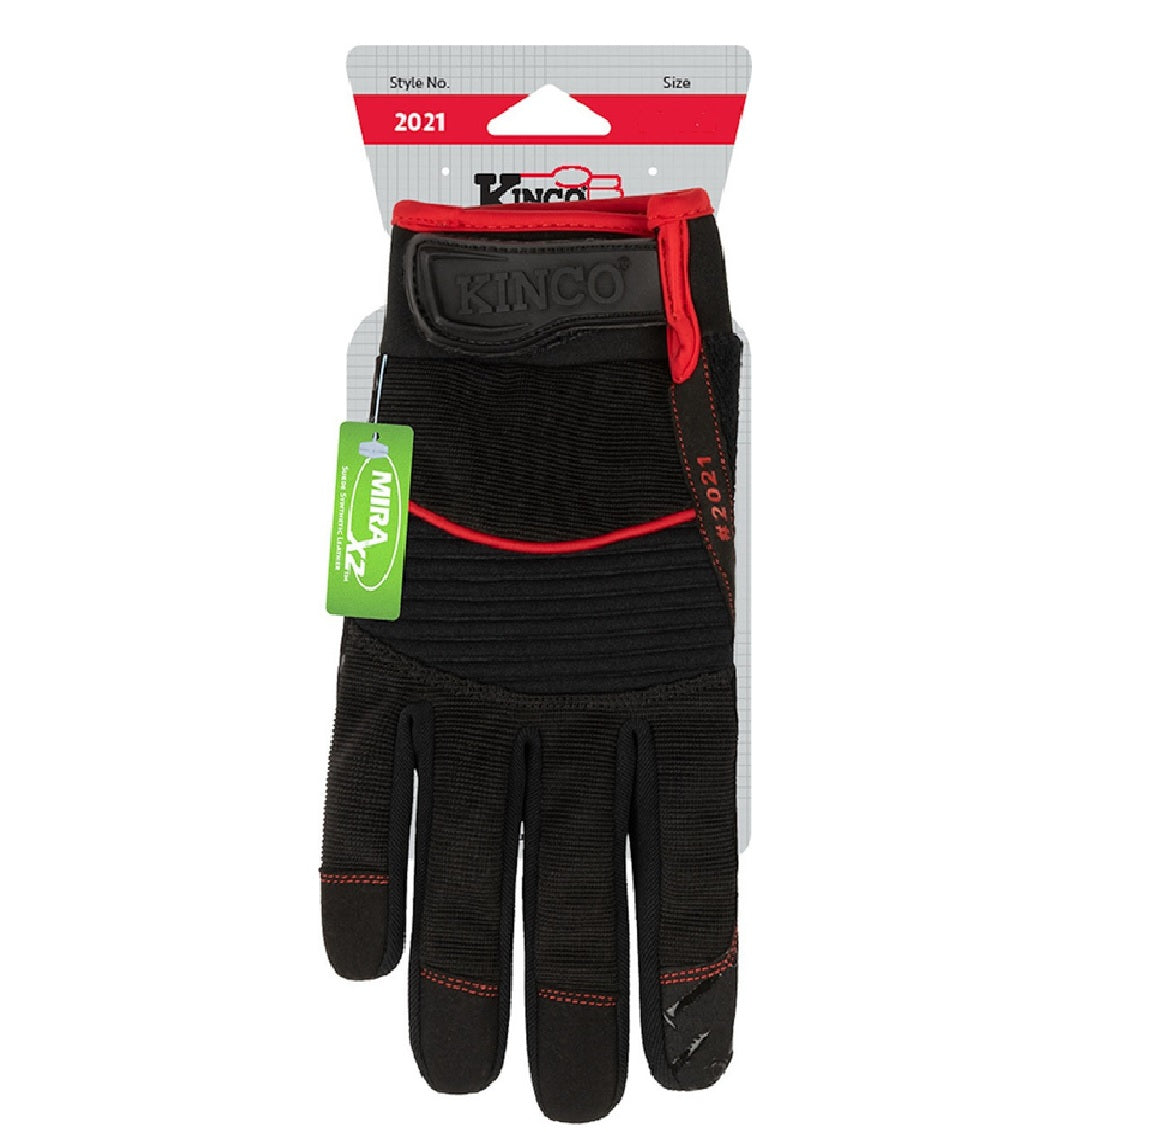 Kinco 2021-M Handler Men's Hybrid Work Gloves, Medium